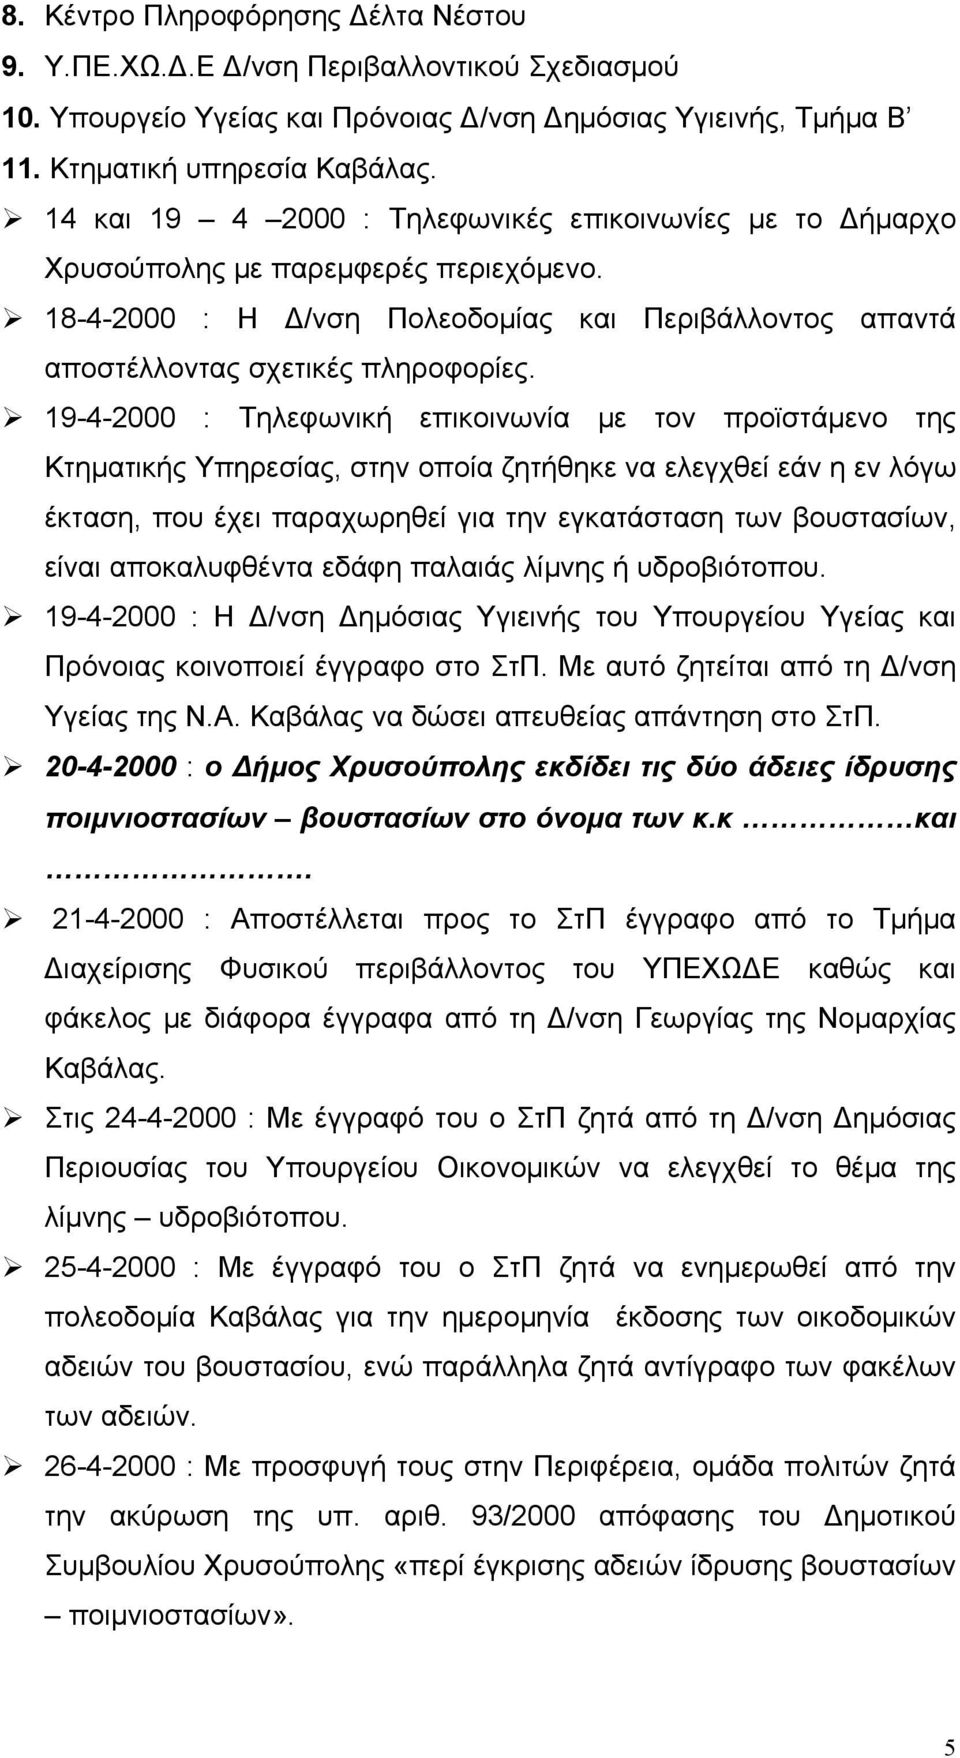 19-4-2000 : Τηλεφωνική επικοινωνία με τον προϊστάμενο της Κτηματικής Υπηρεσίας, στην οποία ζητήθηκε να ελεγχθεί εάν η εν λόγω έκταση, που έχει παραχωρηθεί για την εγκατάσταση των βουστασίων, είναι